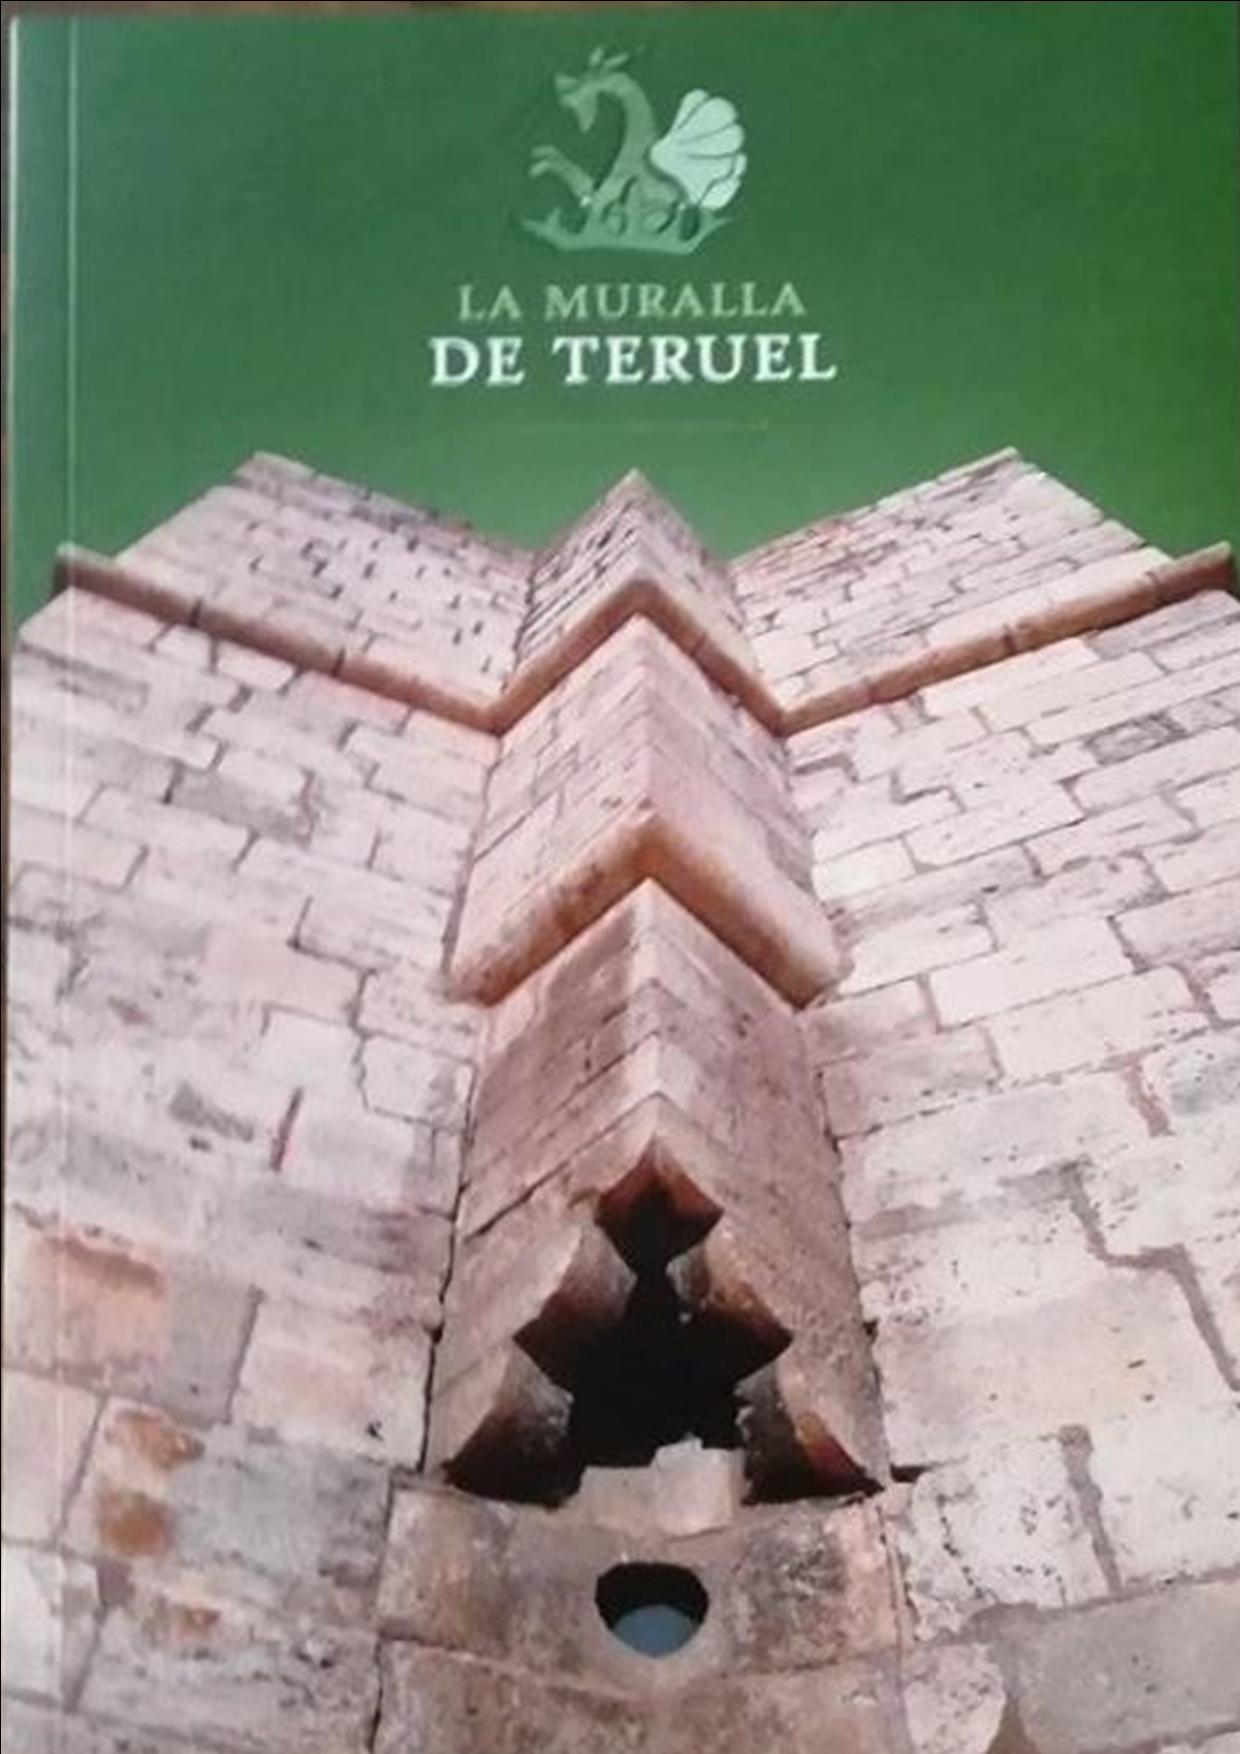 Noticia Diario de Teruel: Una publicación recoge la evolución de la Muralla de Teruel